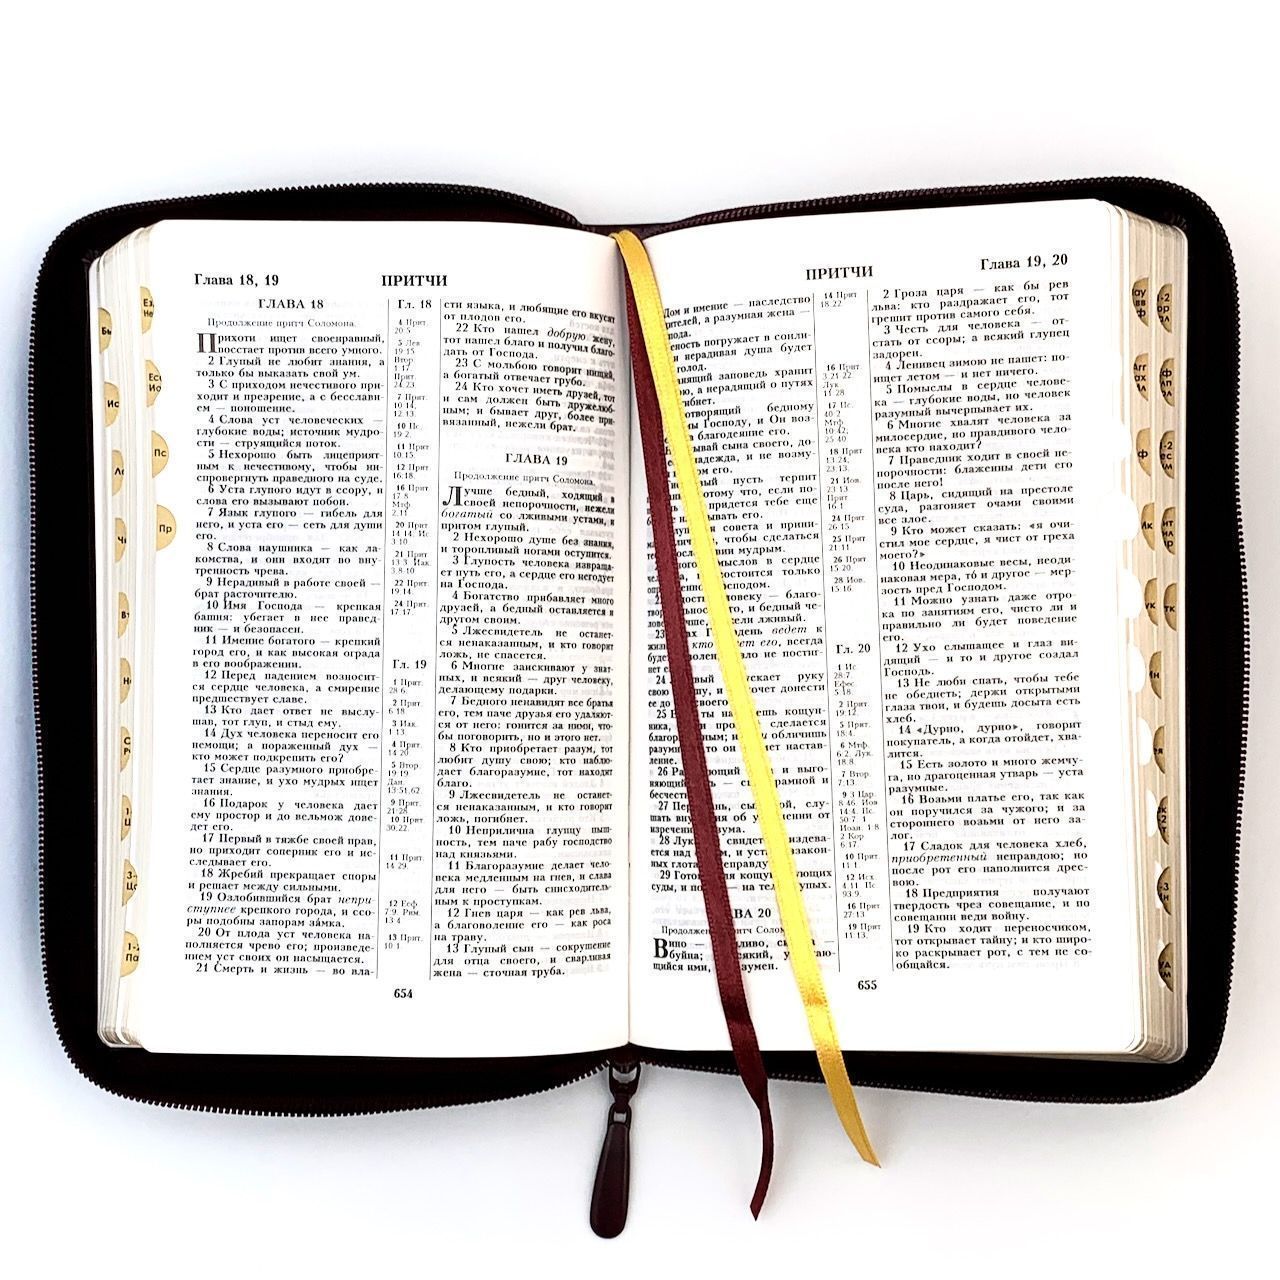 Библия 055zti код 23055-33 надпись "Библия с вензелем", кожаный переплет на молнии с индексами, цвет коричневый с оттенком бордо металлик, средний формат, 143*220 мм